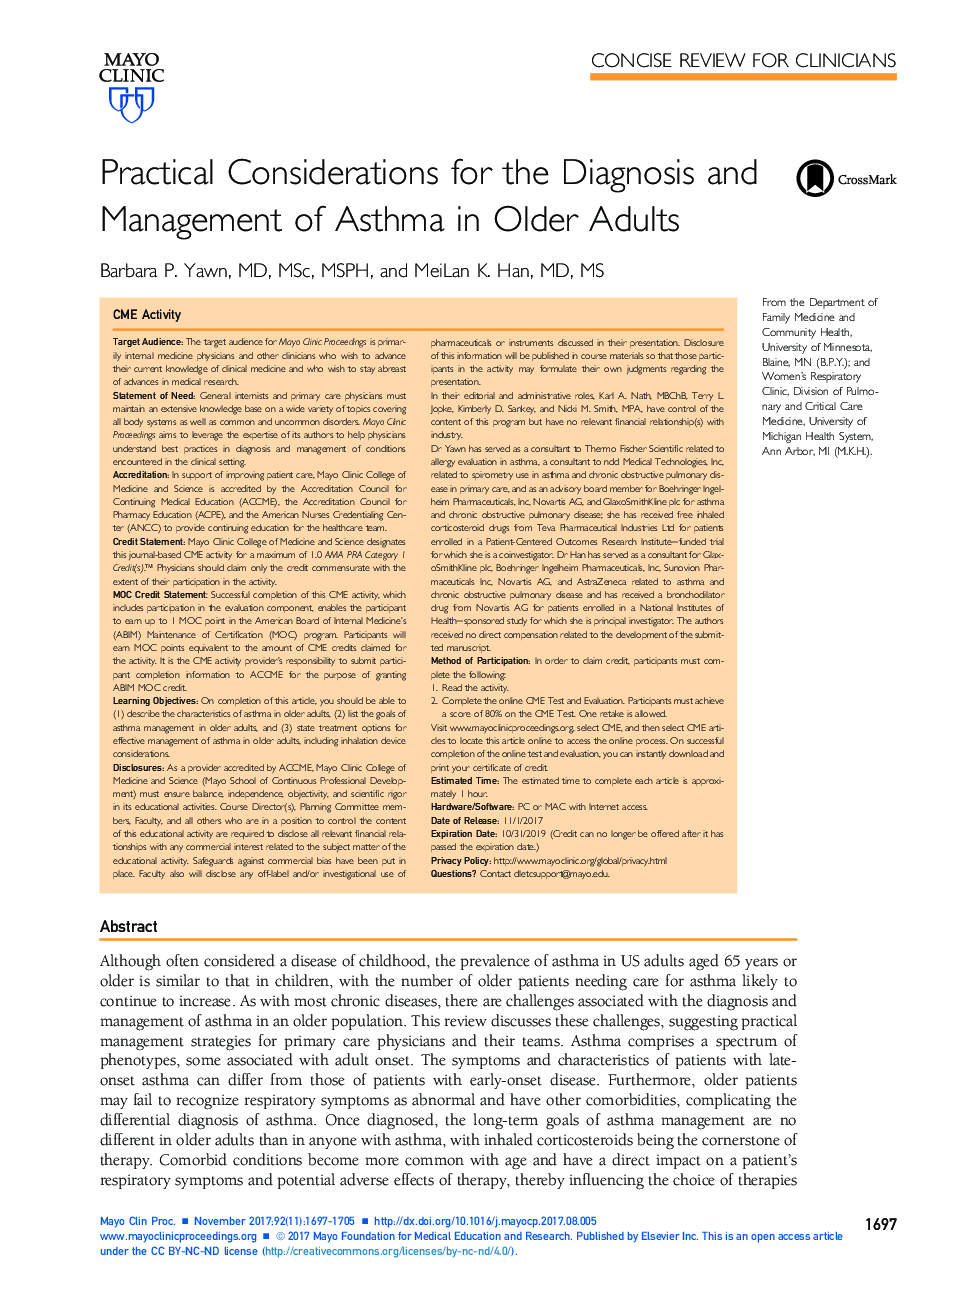 معیارهای عملی تشخیص و مدیریت آسم در بزرگسالان سالمند 